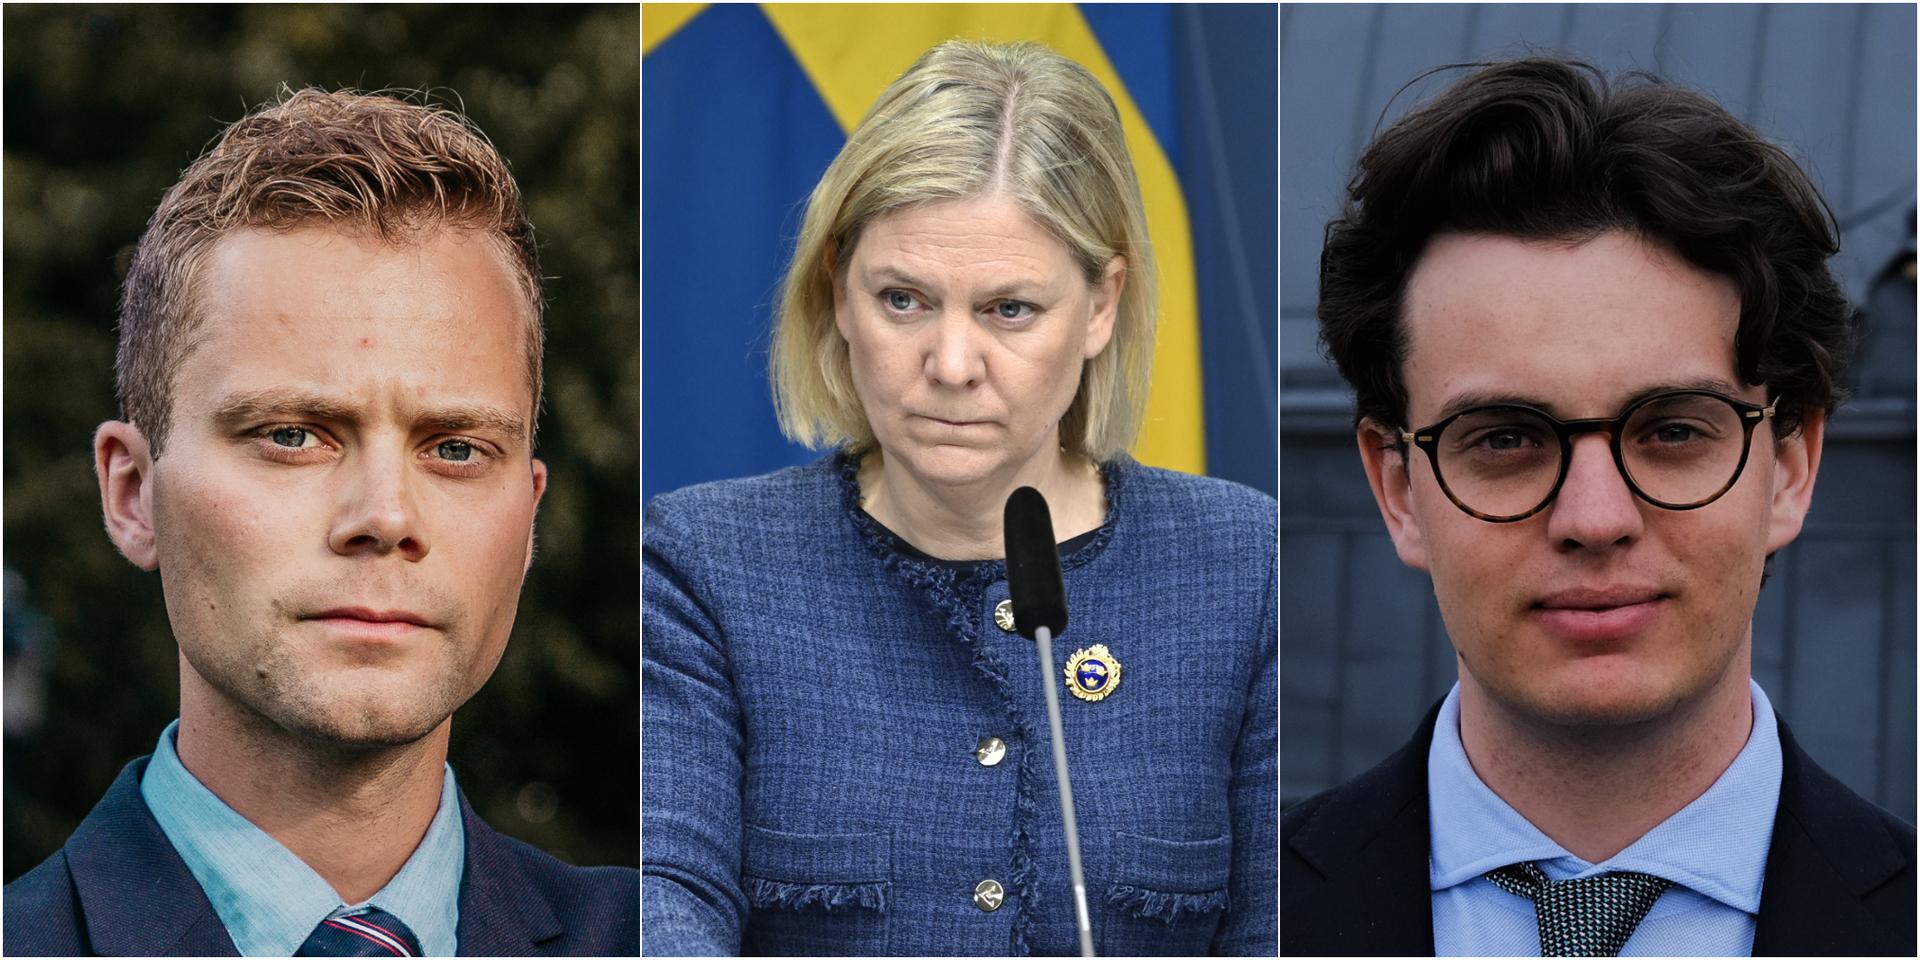 Sverige har redan idag ett av världens högsta skattetryck, 43 procent av BNP, vilket är långt över OECD-genomsnittet på 34 procent. Hur är det möjligt att det inte räcker för att se till att en av statens mest grundläggande uppgifter – försvaret av medborgarna från yttre hot –  fungerar? skriver debattörerna.